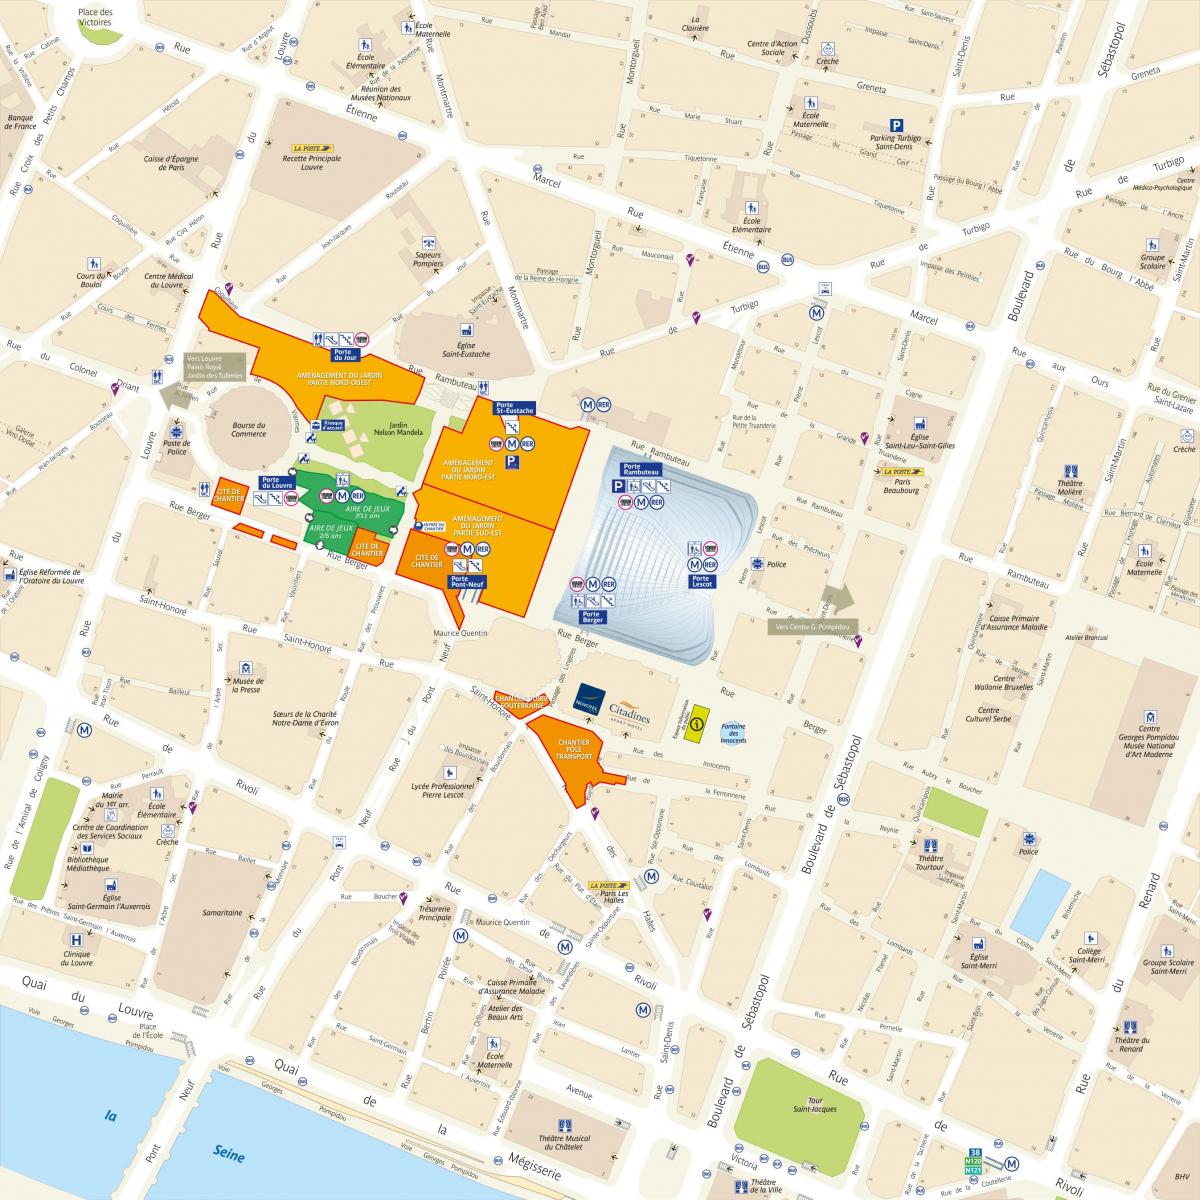 Mapa do Distrito de Les Halles